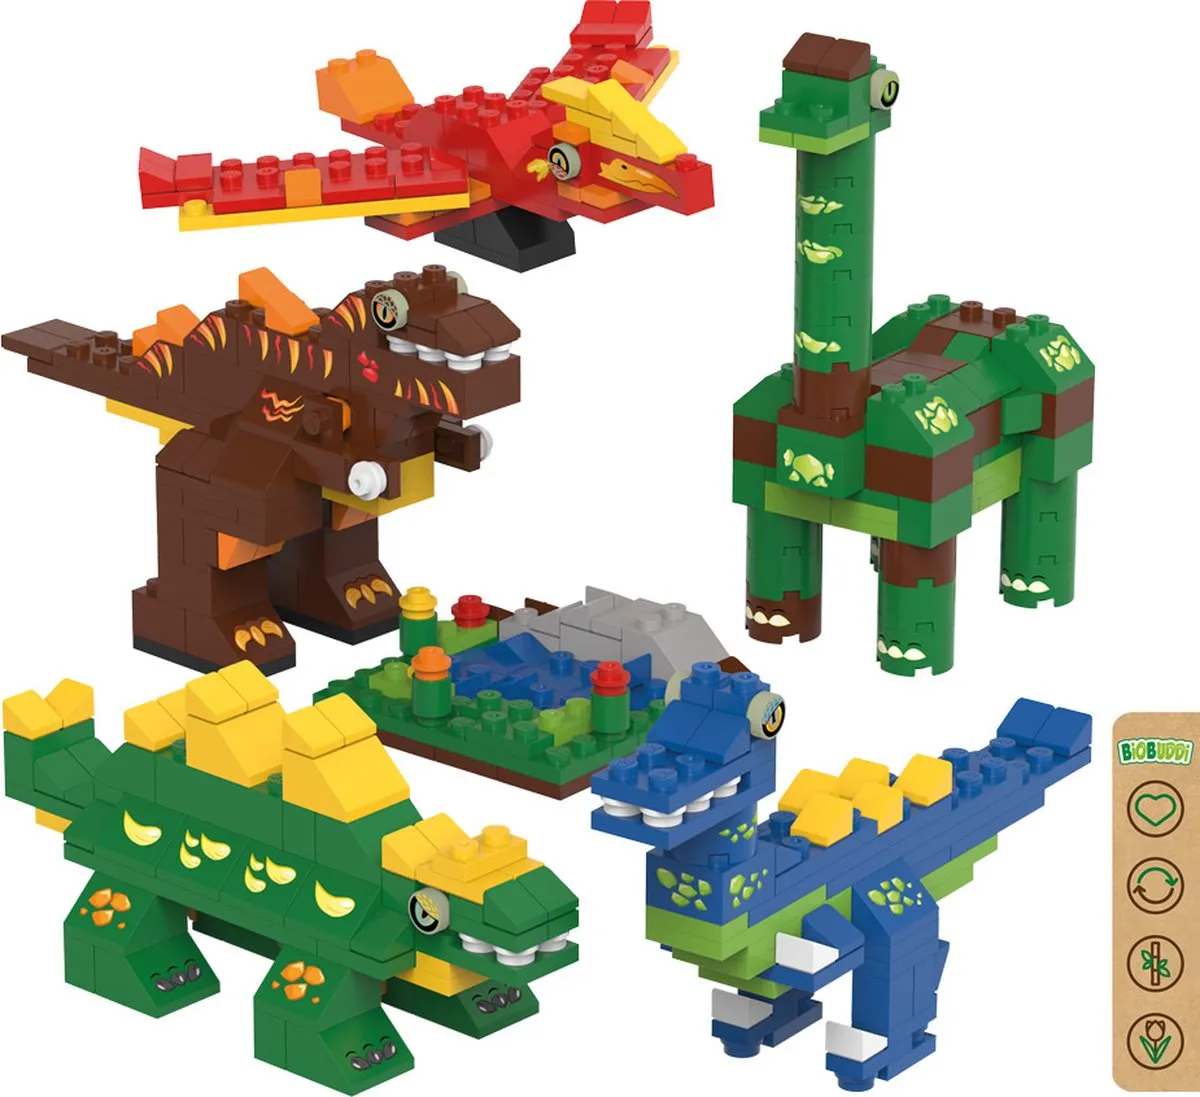 BiOBUDDi oddbods Eco Blocks BB-0237 speelgoed